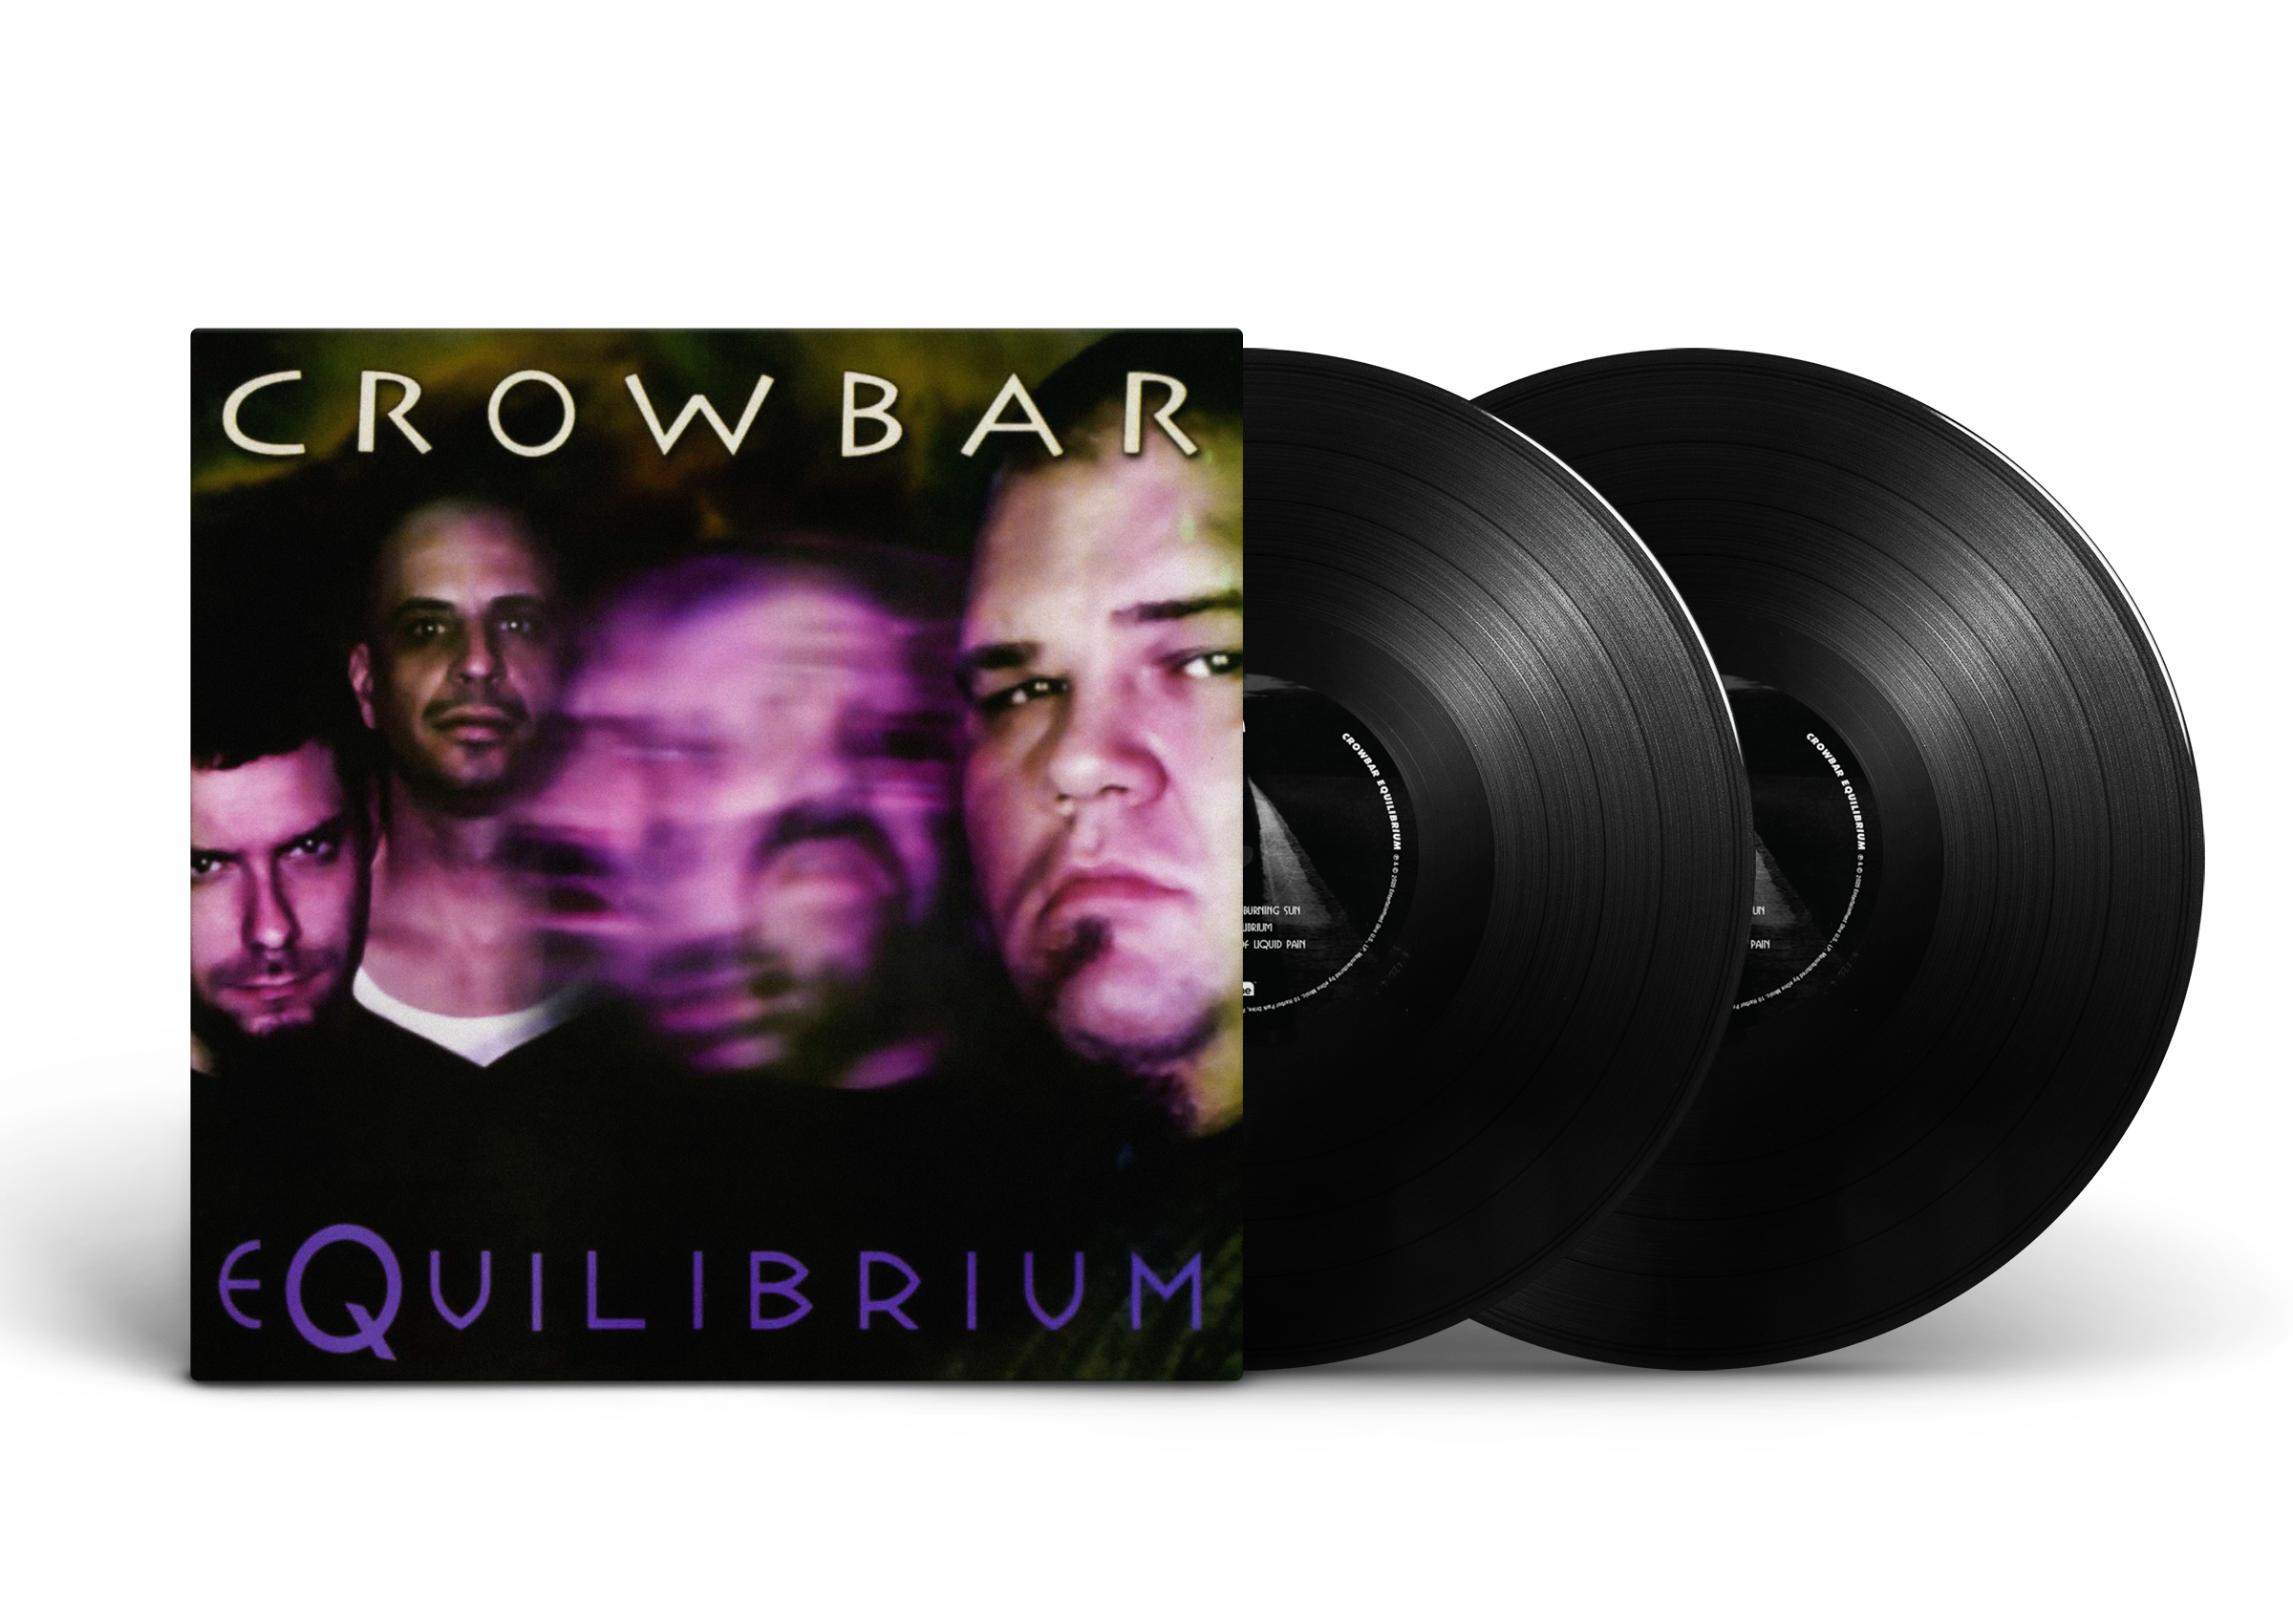 Crowbar - Equilibrium; BLACK LPs